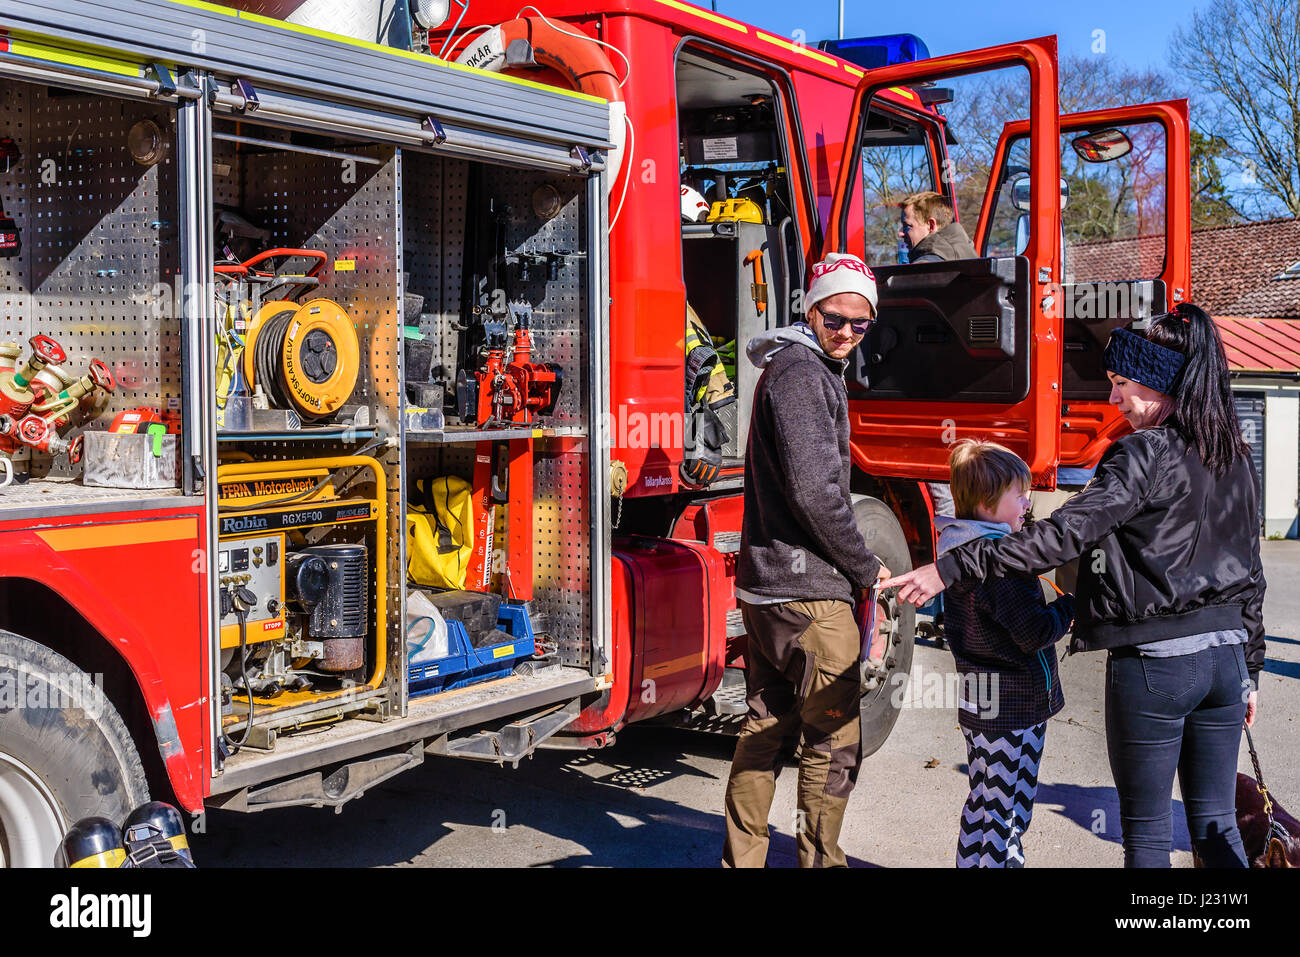 Hoby Brakne, Schweden - 22. April 2017: Dokumentation der öffentlichen Feuer LKW Präsentation. Frau von Mann und Kind, zeigte auf Ausstattung innen begleitet Stockfoto